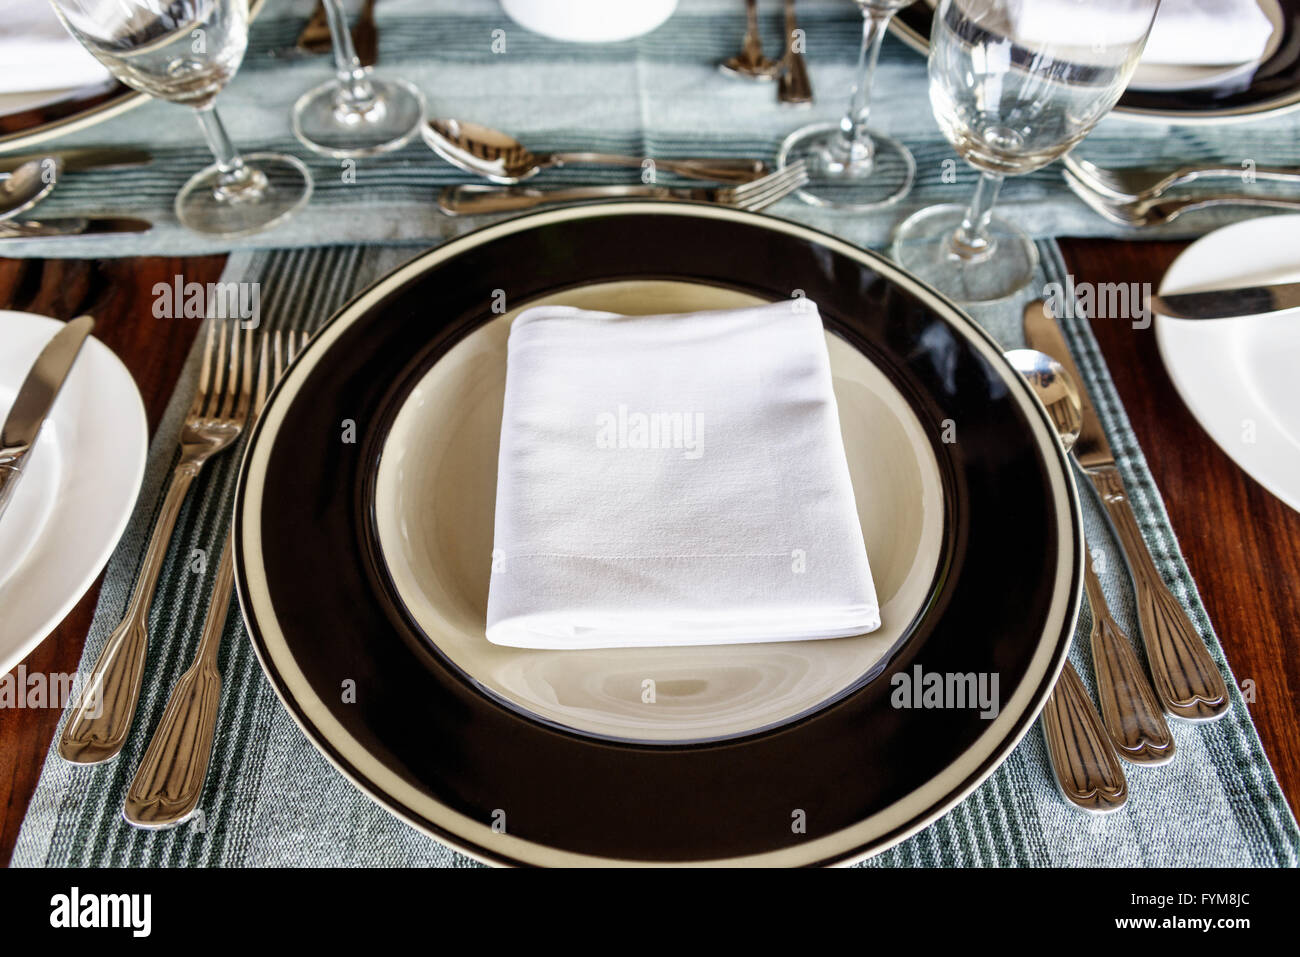 Vue perspective de la première personne sont soigneusement disposées sur une table à manger avec une serviette pliée au milieu de la plaque avec des ustensiles sur sid Banque D'Images